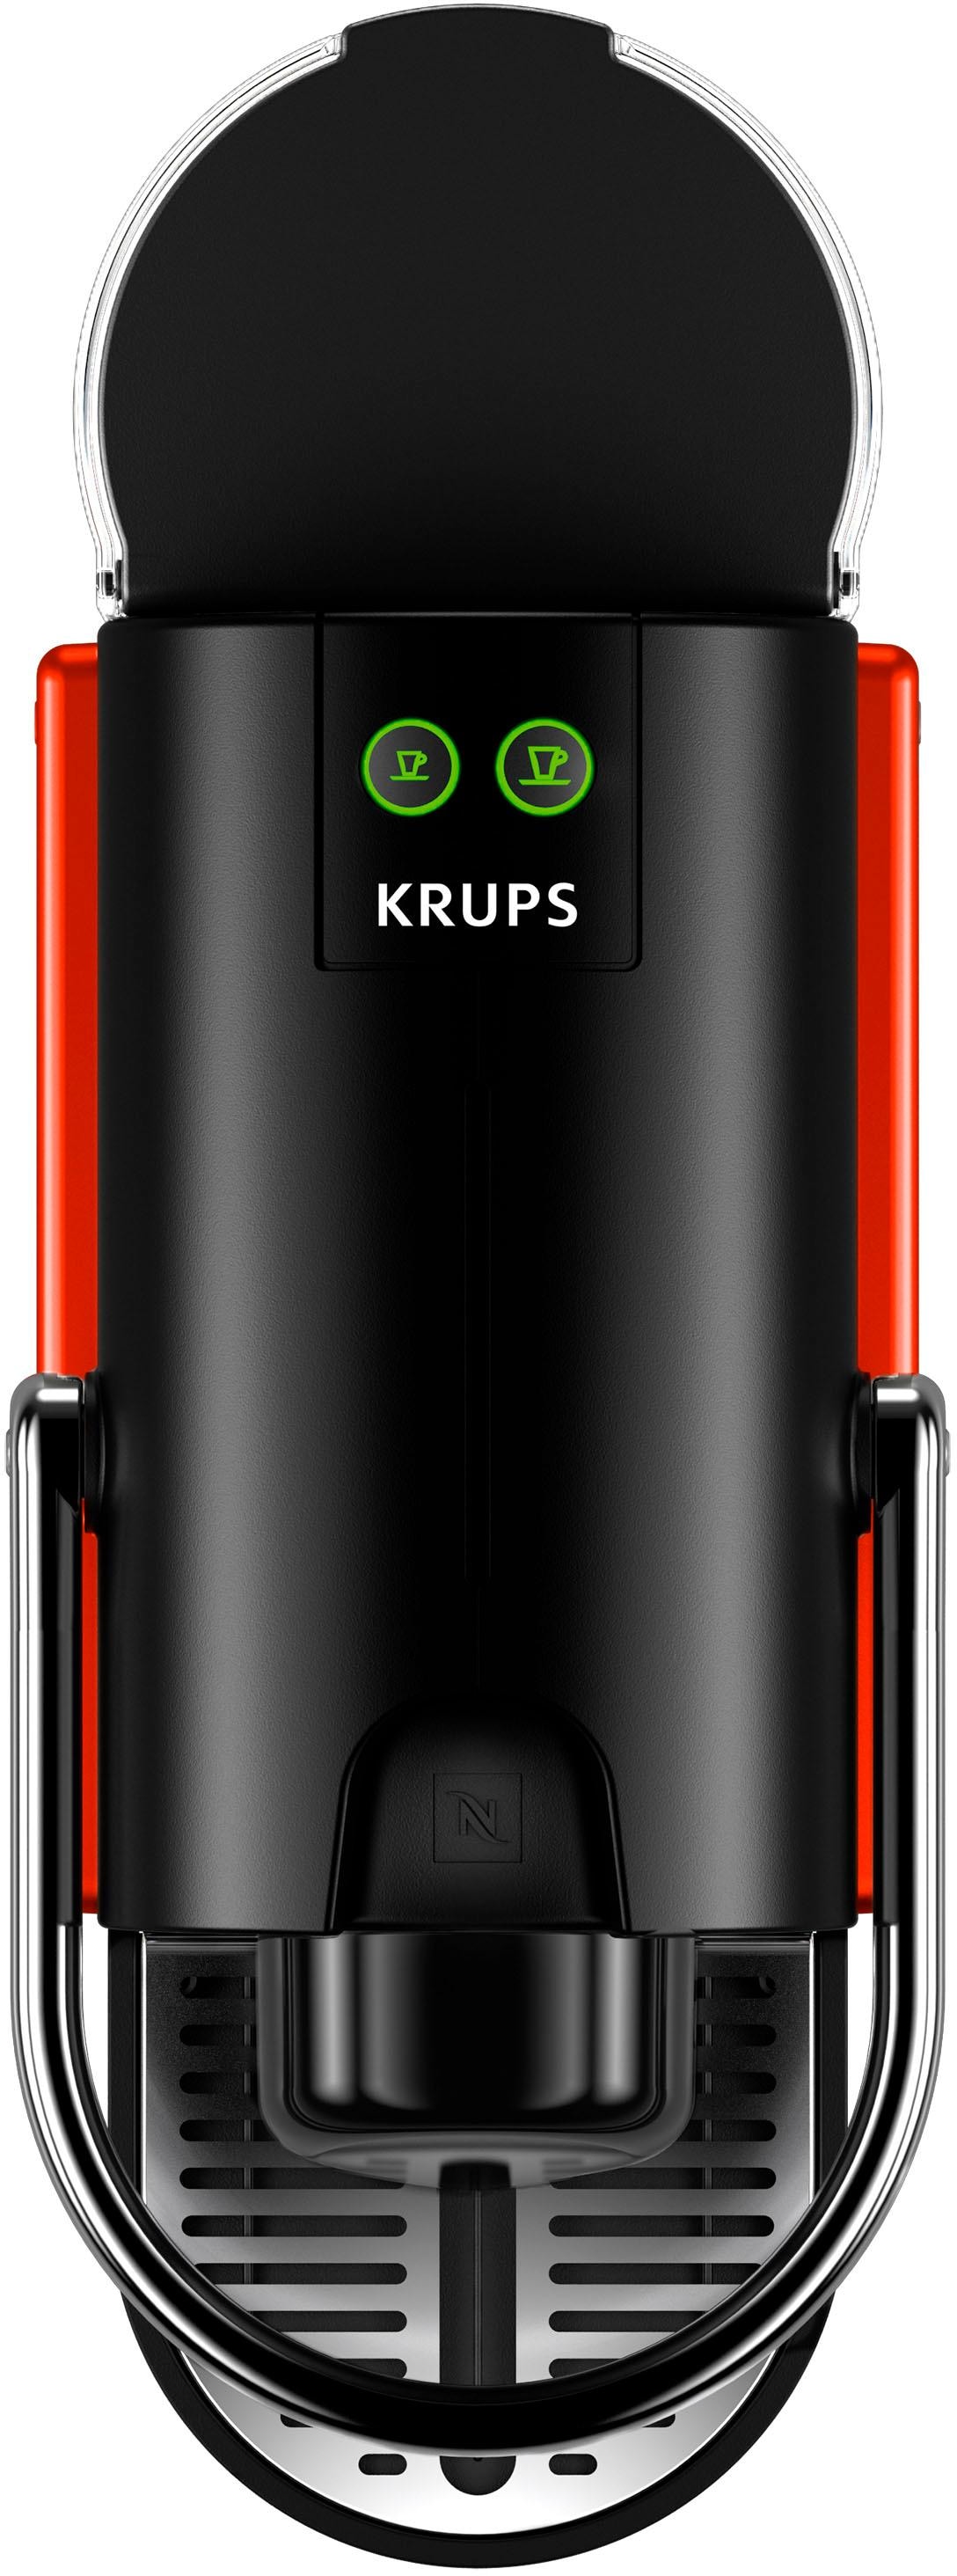 Nespresso Kapselmaschine »Pixie XN3045 von 7 Kapseln bei Red«, OTTO inkl. Krups, mit Willkommenspaket jetzt bestellen